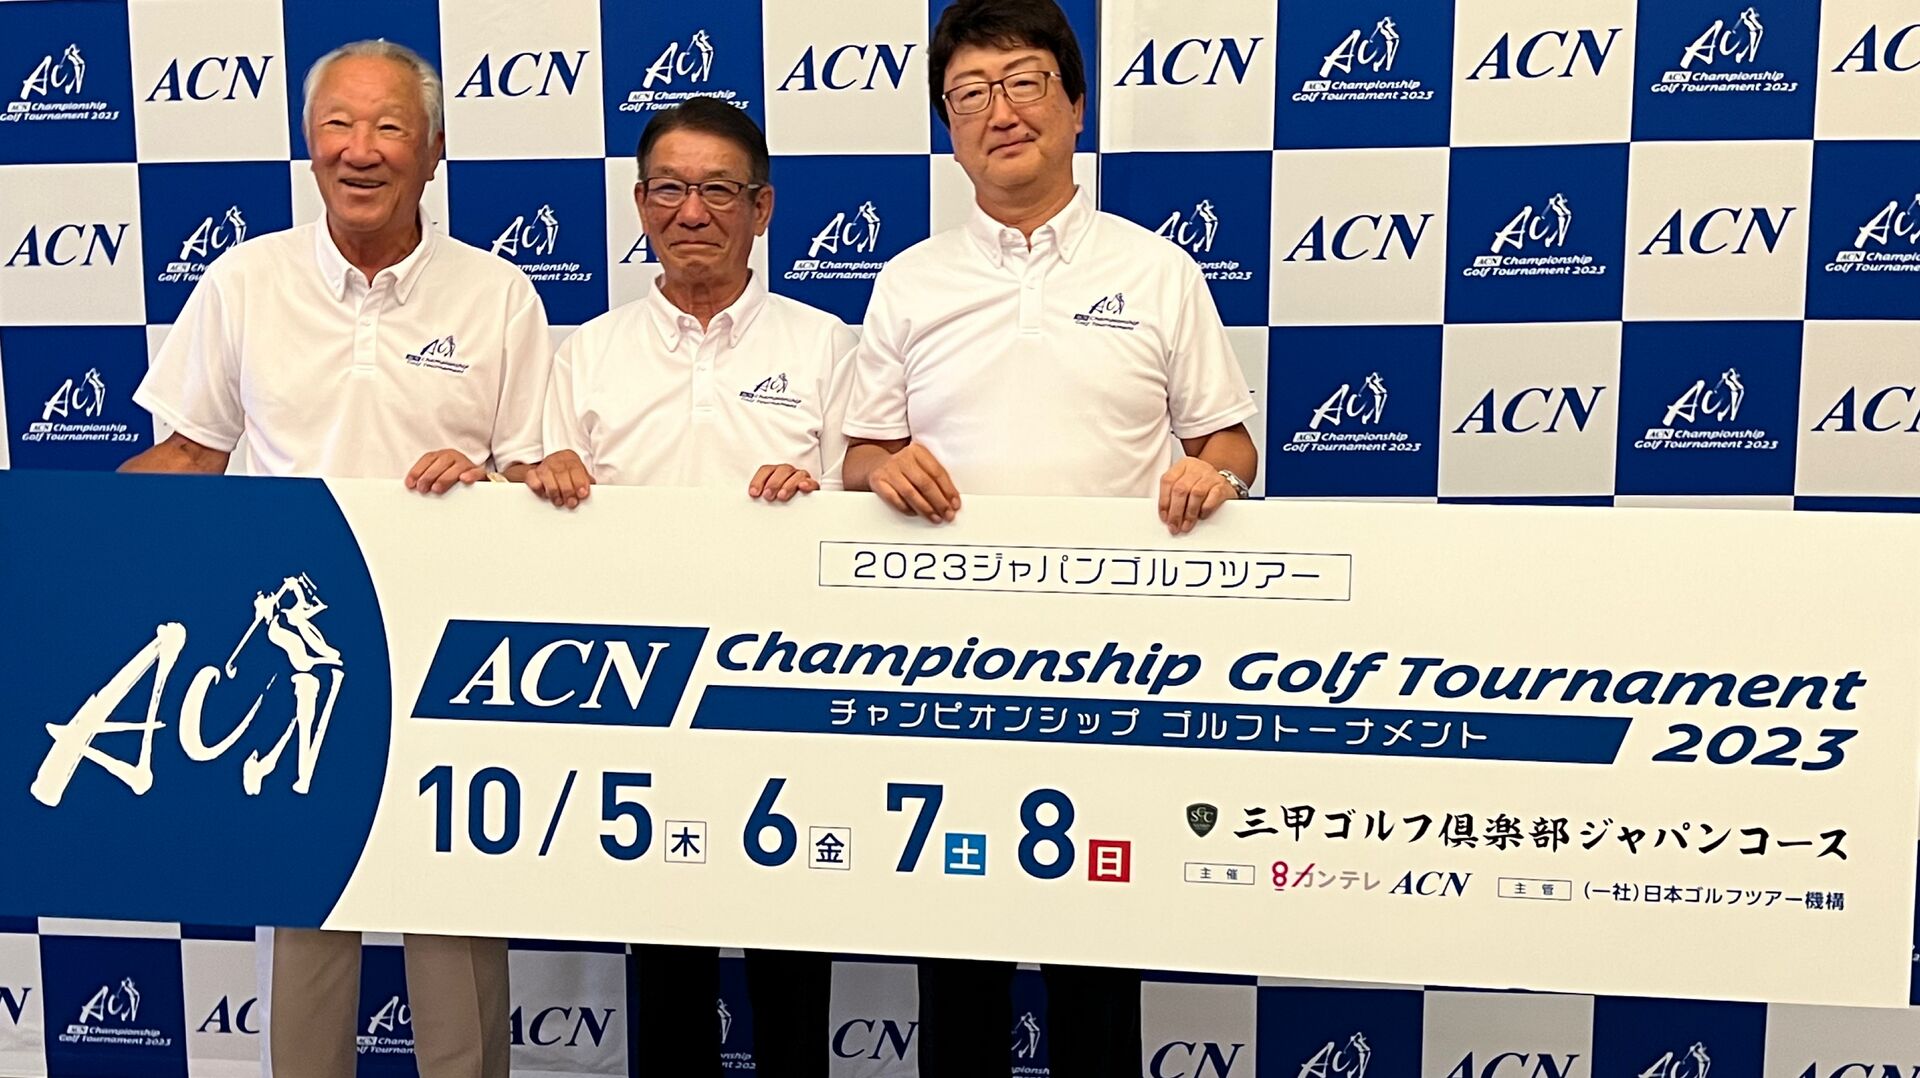 シン・男子ゴルフ新時代へ！『ACNチャンピオンシップゴルフトーナメント』は10月5日より開催（7月31日開催会見の模様）